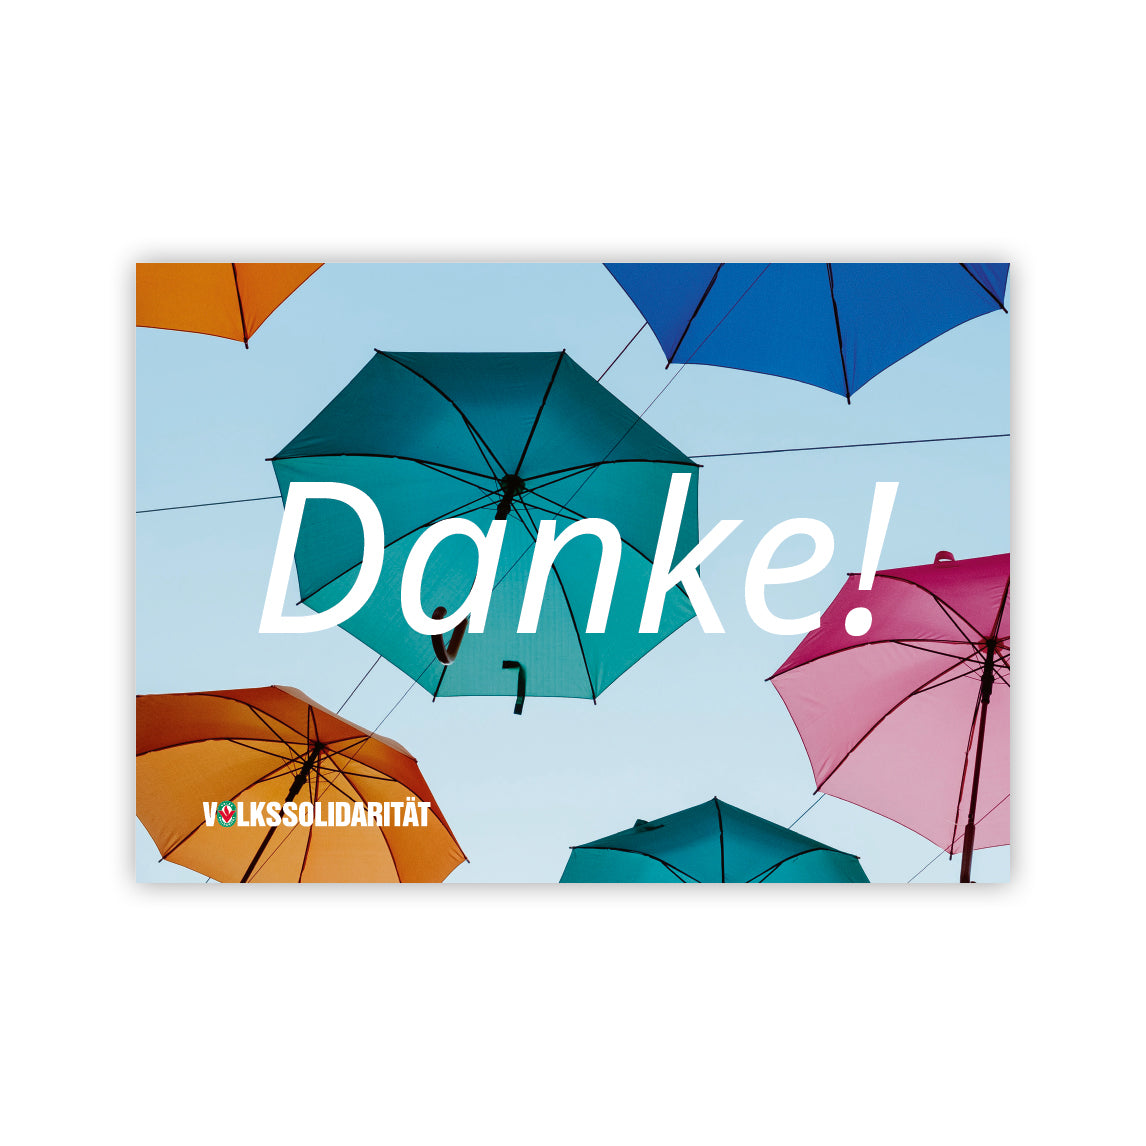 Postkarte "Danke" mit bunten Regenschirmen